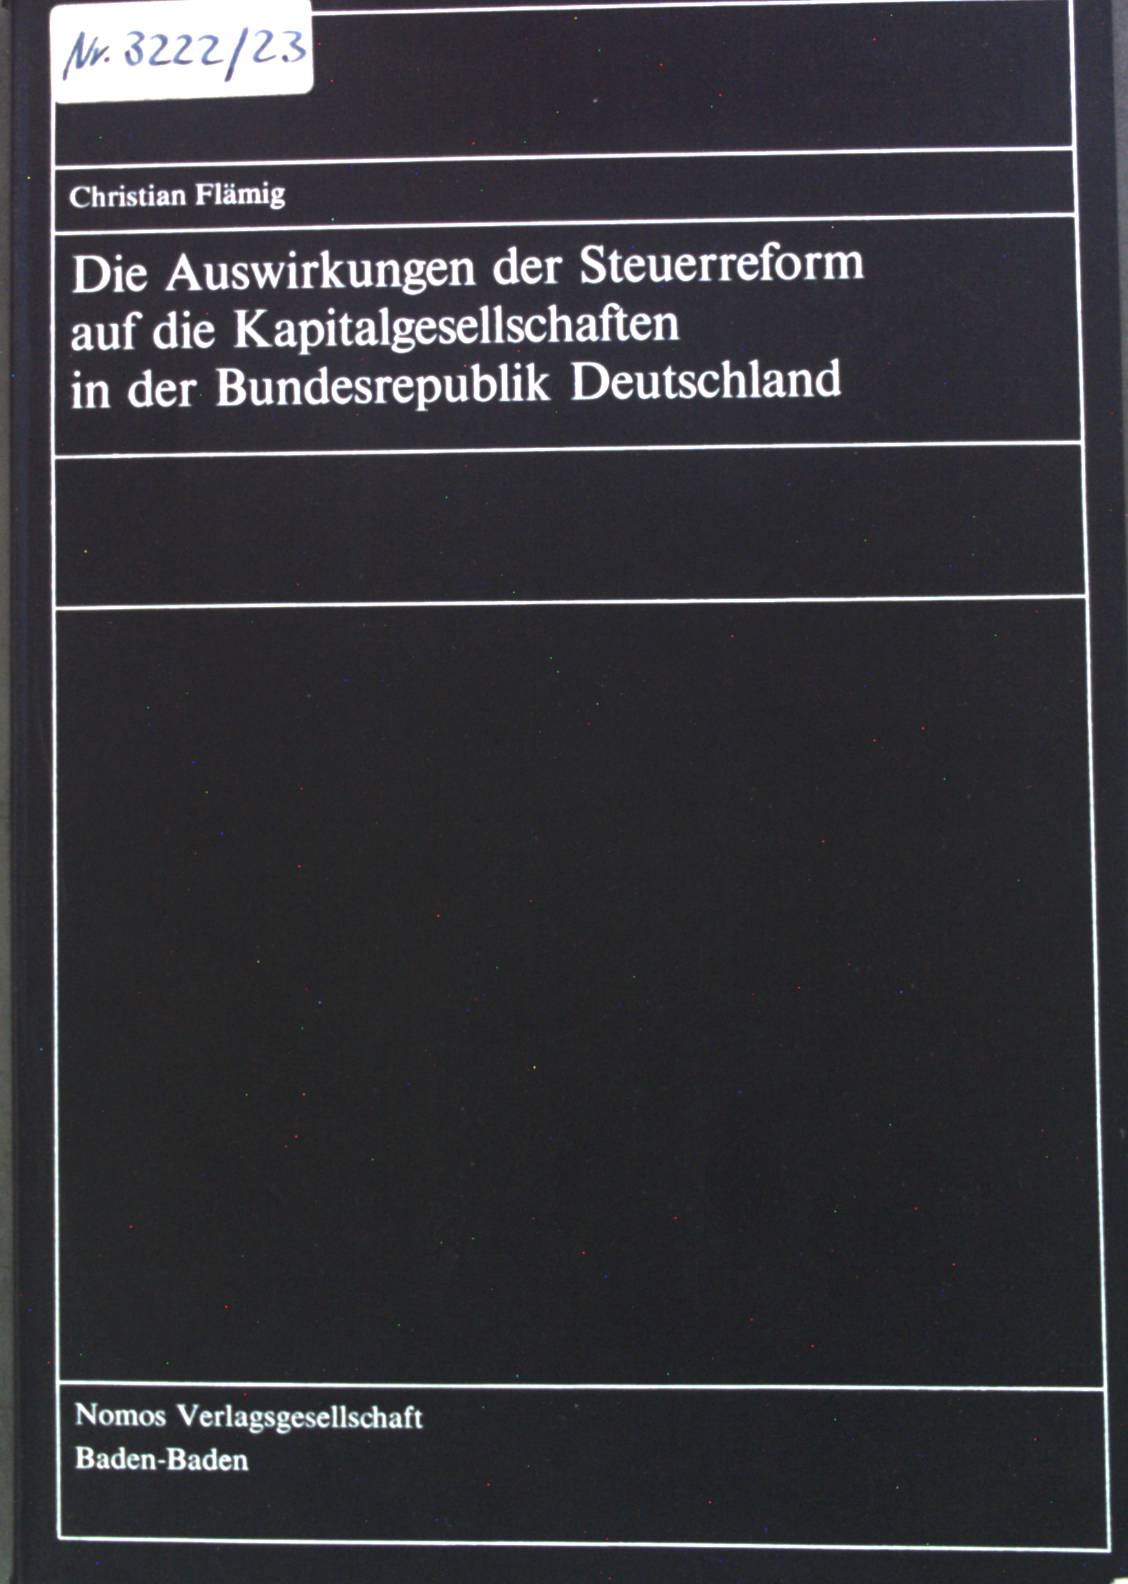 Die Auswirkungen der Steuerreform auf die Kapitalgesellschaften in der Bundesrepublik Deutschland. - Flämig, Christian